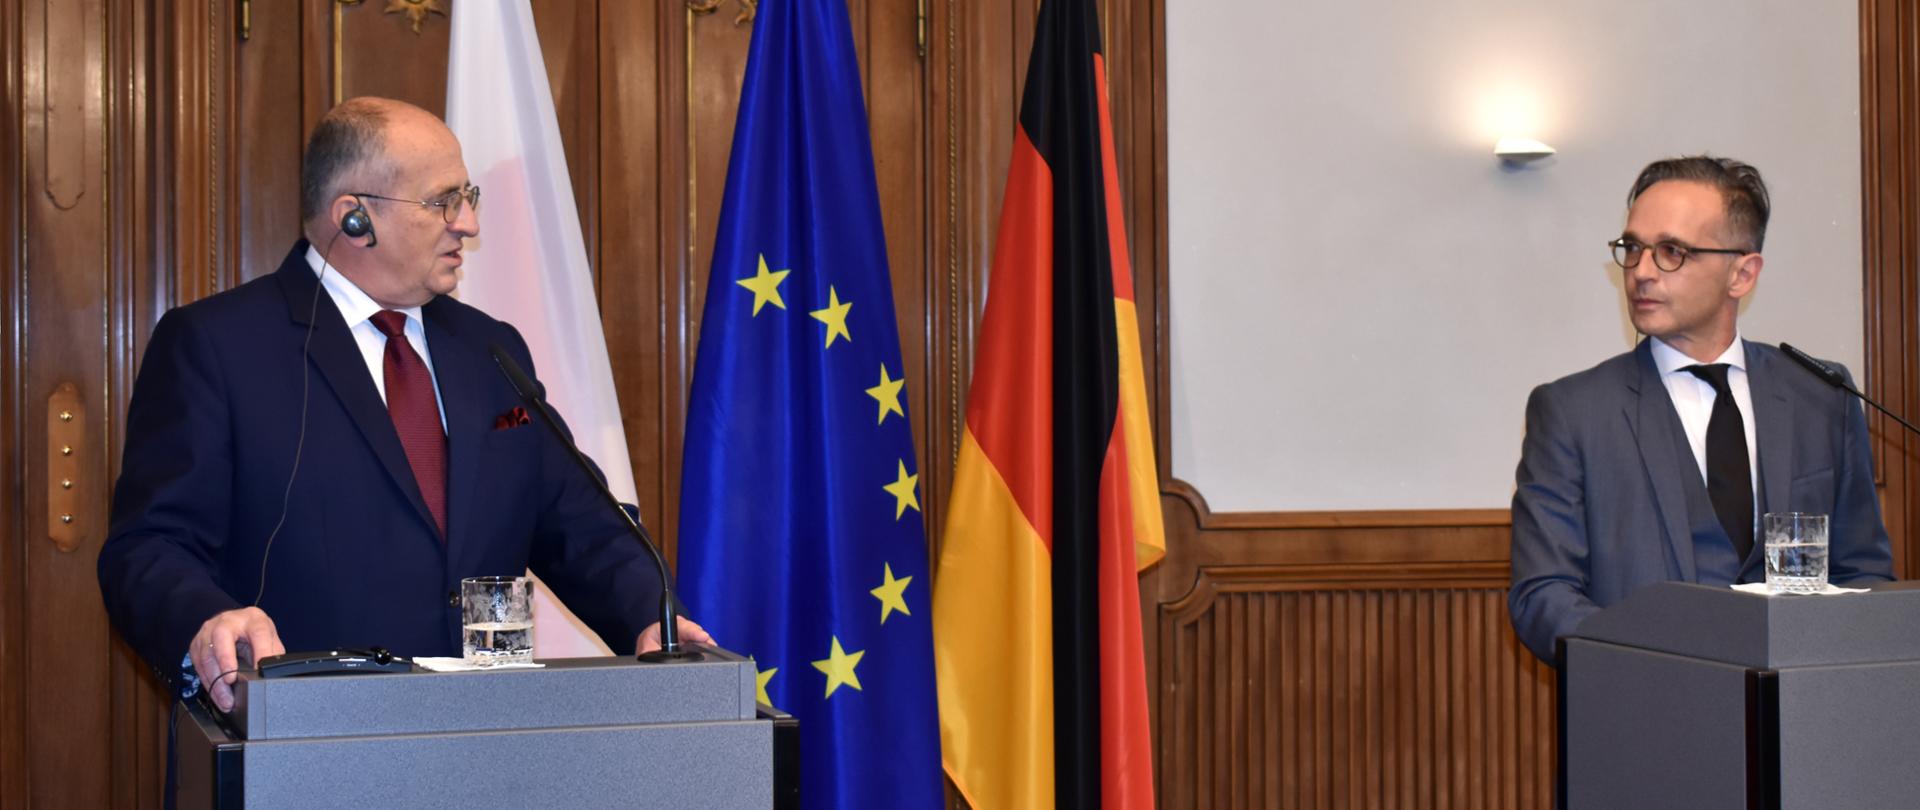 Minister Zbigniew Rau zu Besuch in Berlin. Pressekonferenz mit AM Heiko Maas